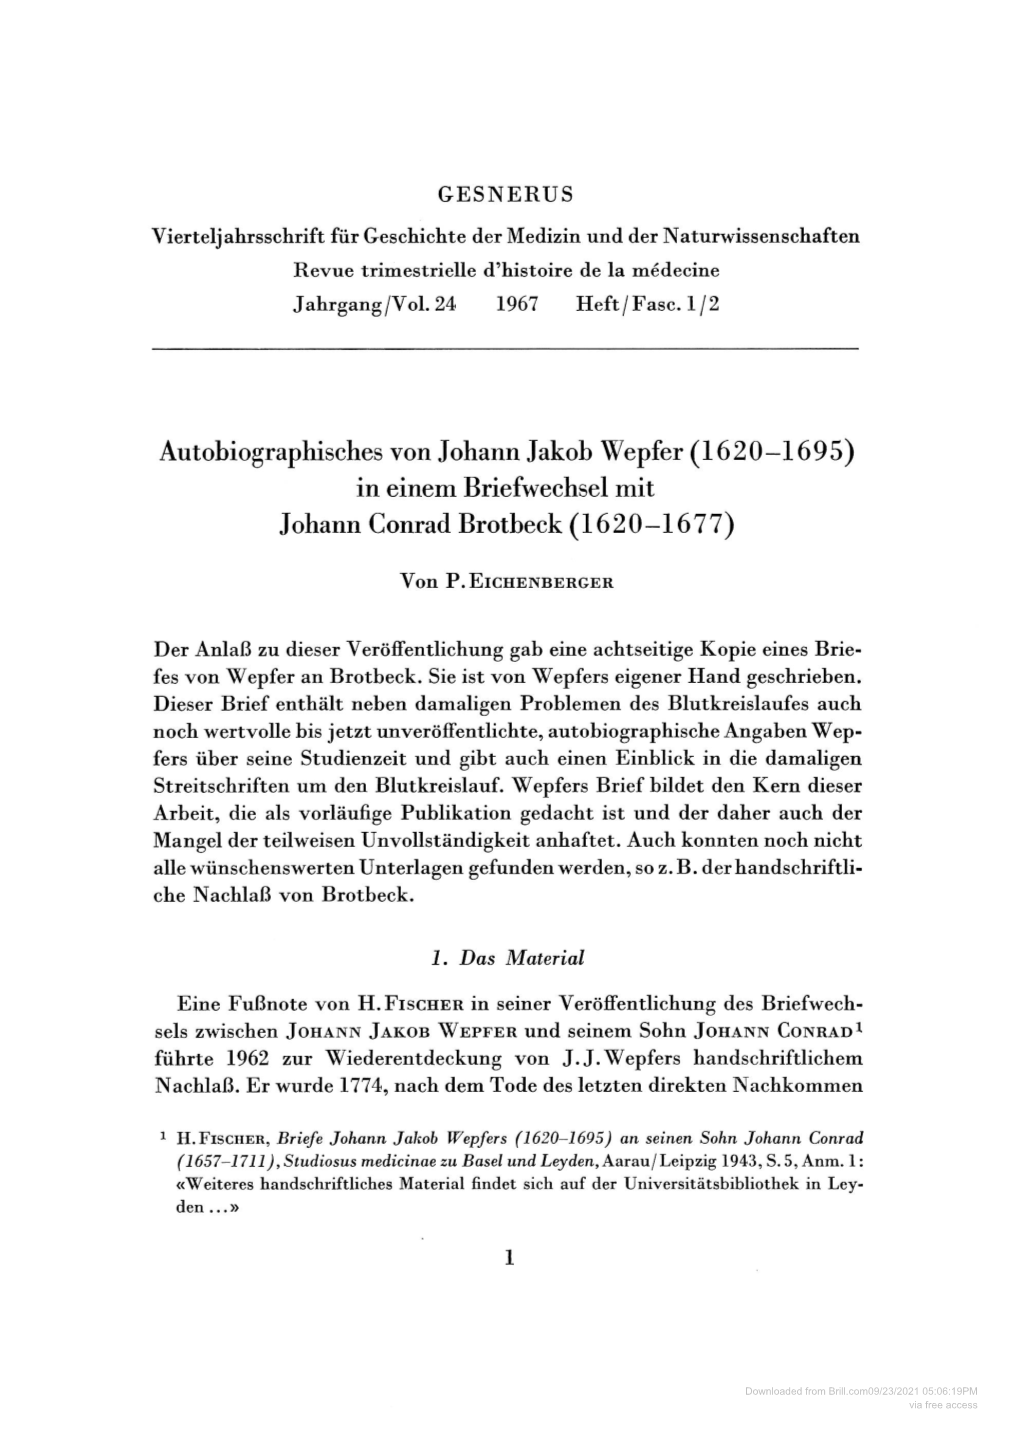 Autobiographisches Von Johann Jakob Wepfer (1620-1695) in Einem Briefwechsel Mit Johann Conrad Brotbeck (1620-1677)